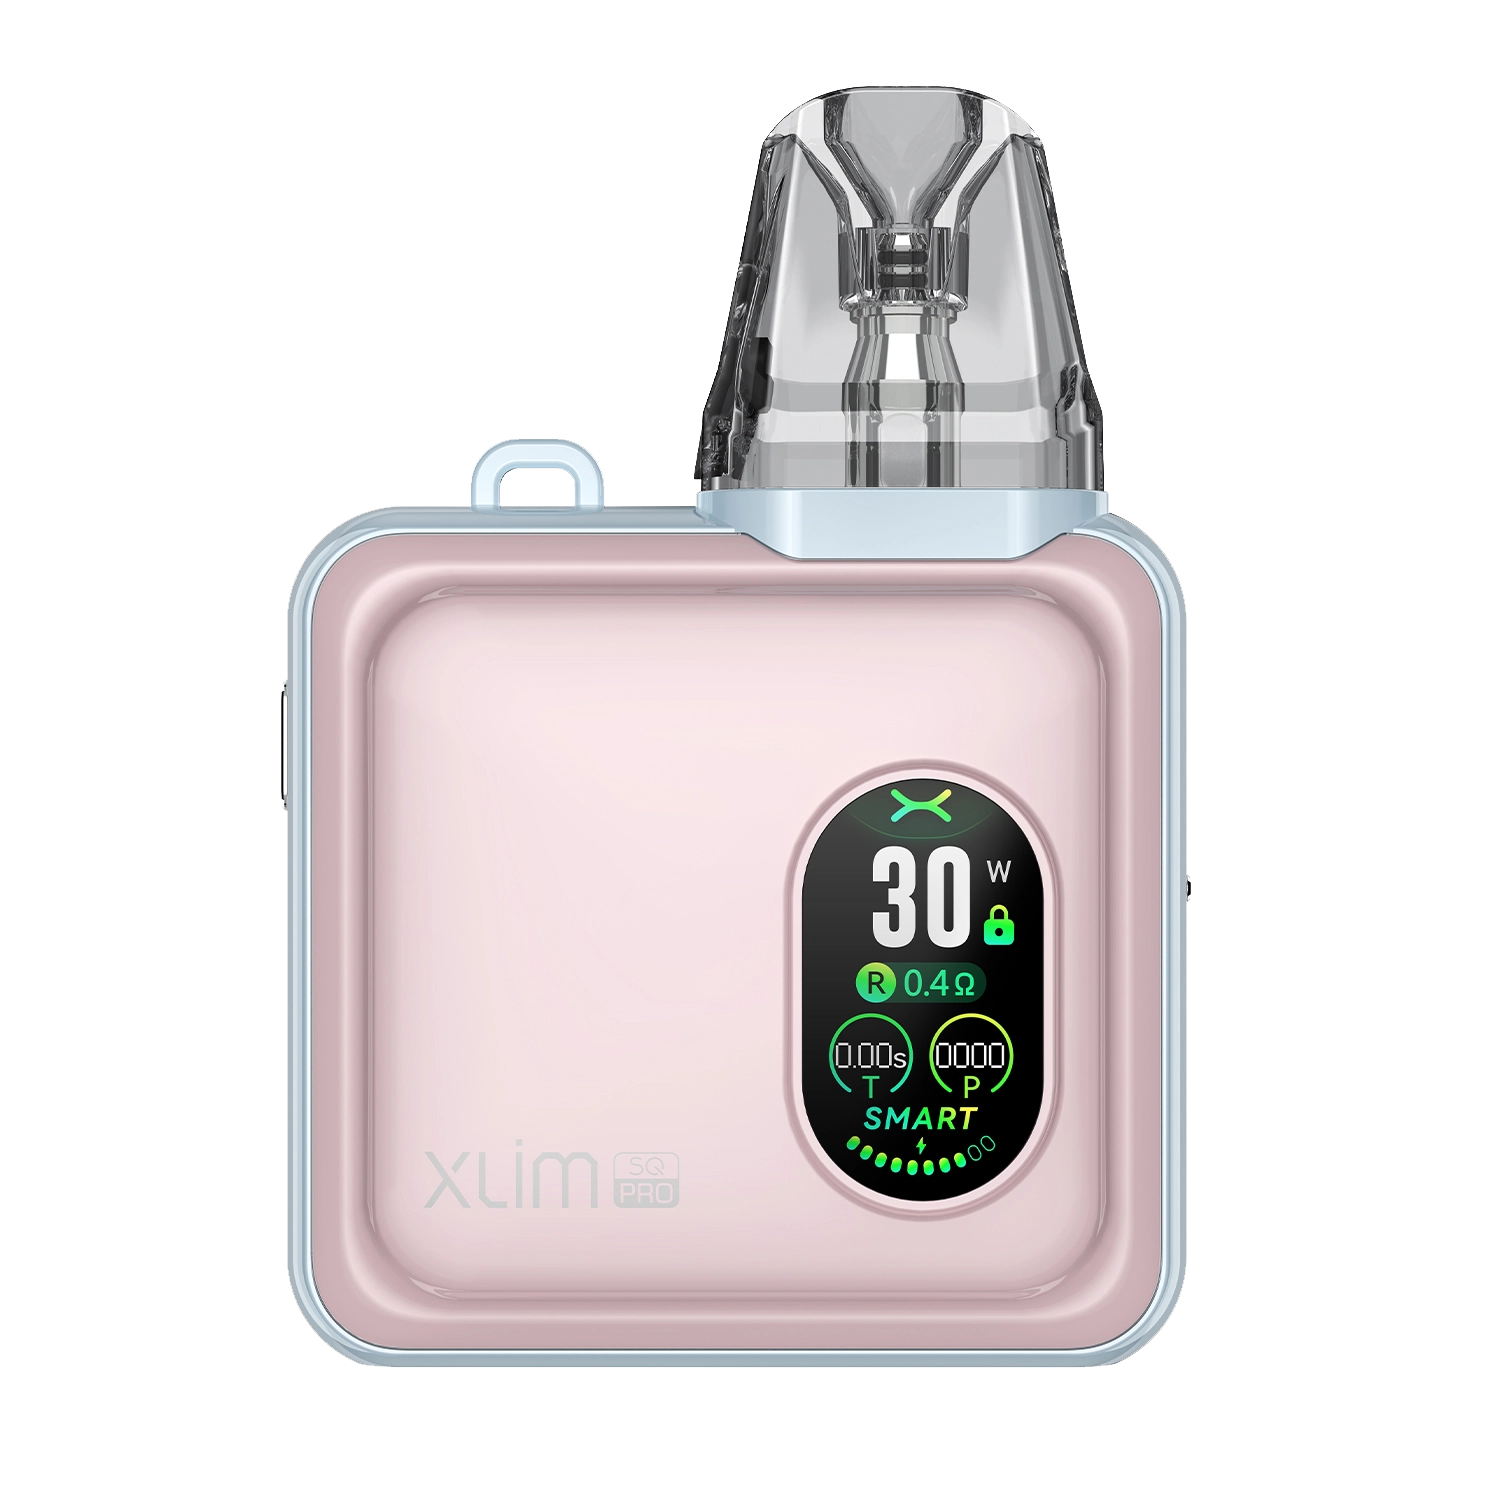 OXVA Xlim SQ Pro Kit - Pastel Pink